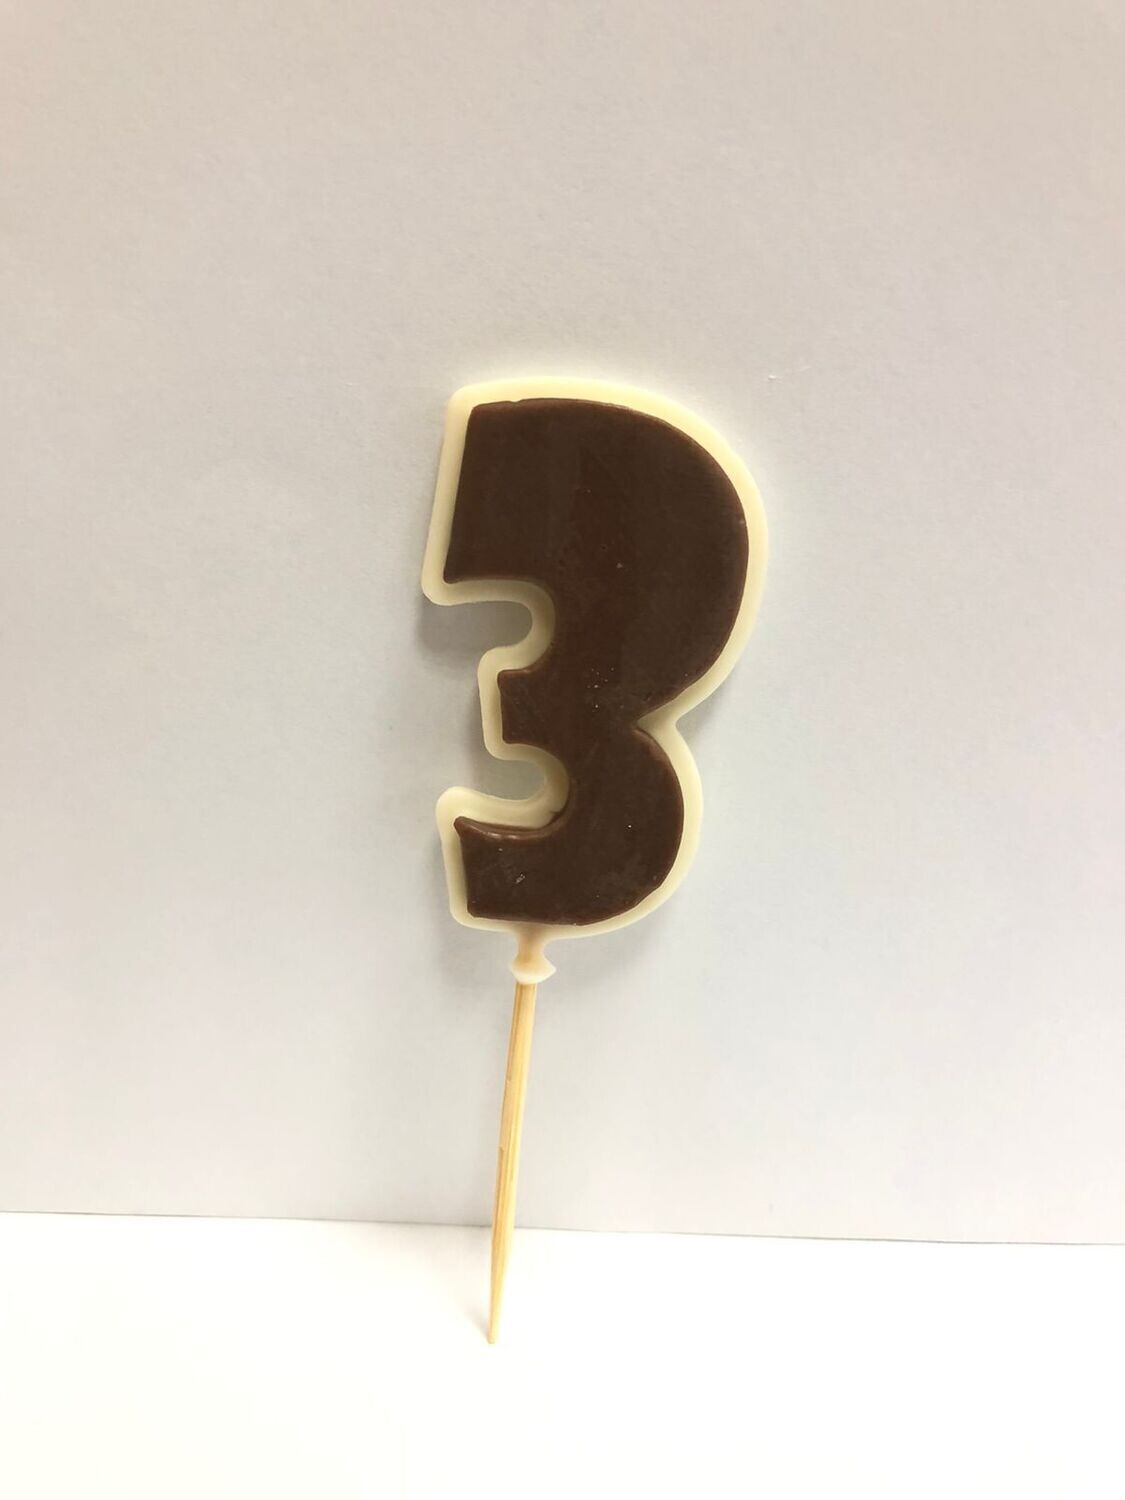 КОРИЧНЕВАЯ Цифра "3" из шоколадной глазури на шпажке, высота цифры 4,5 см